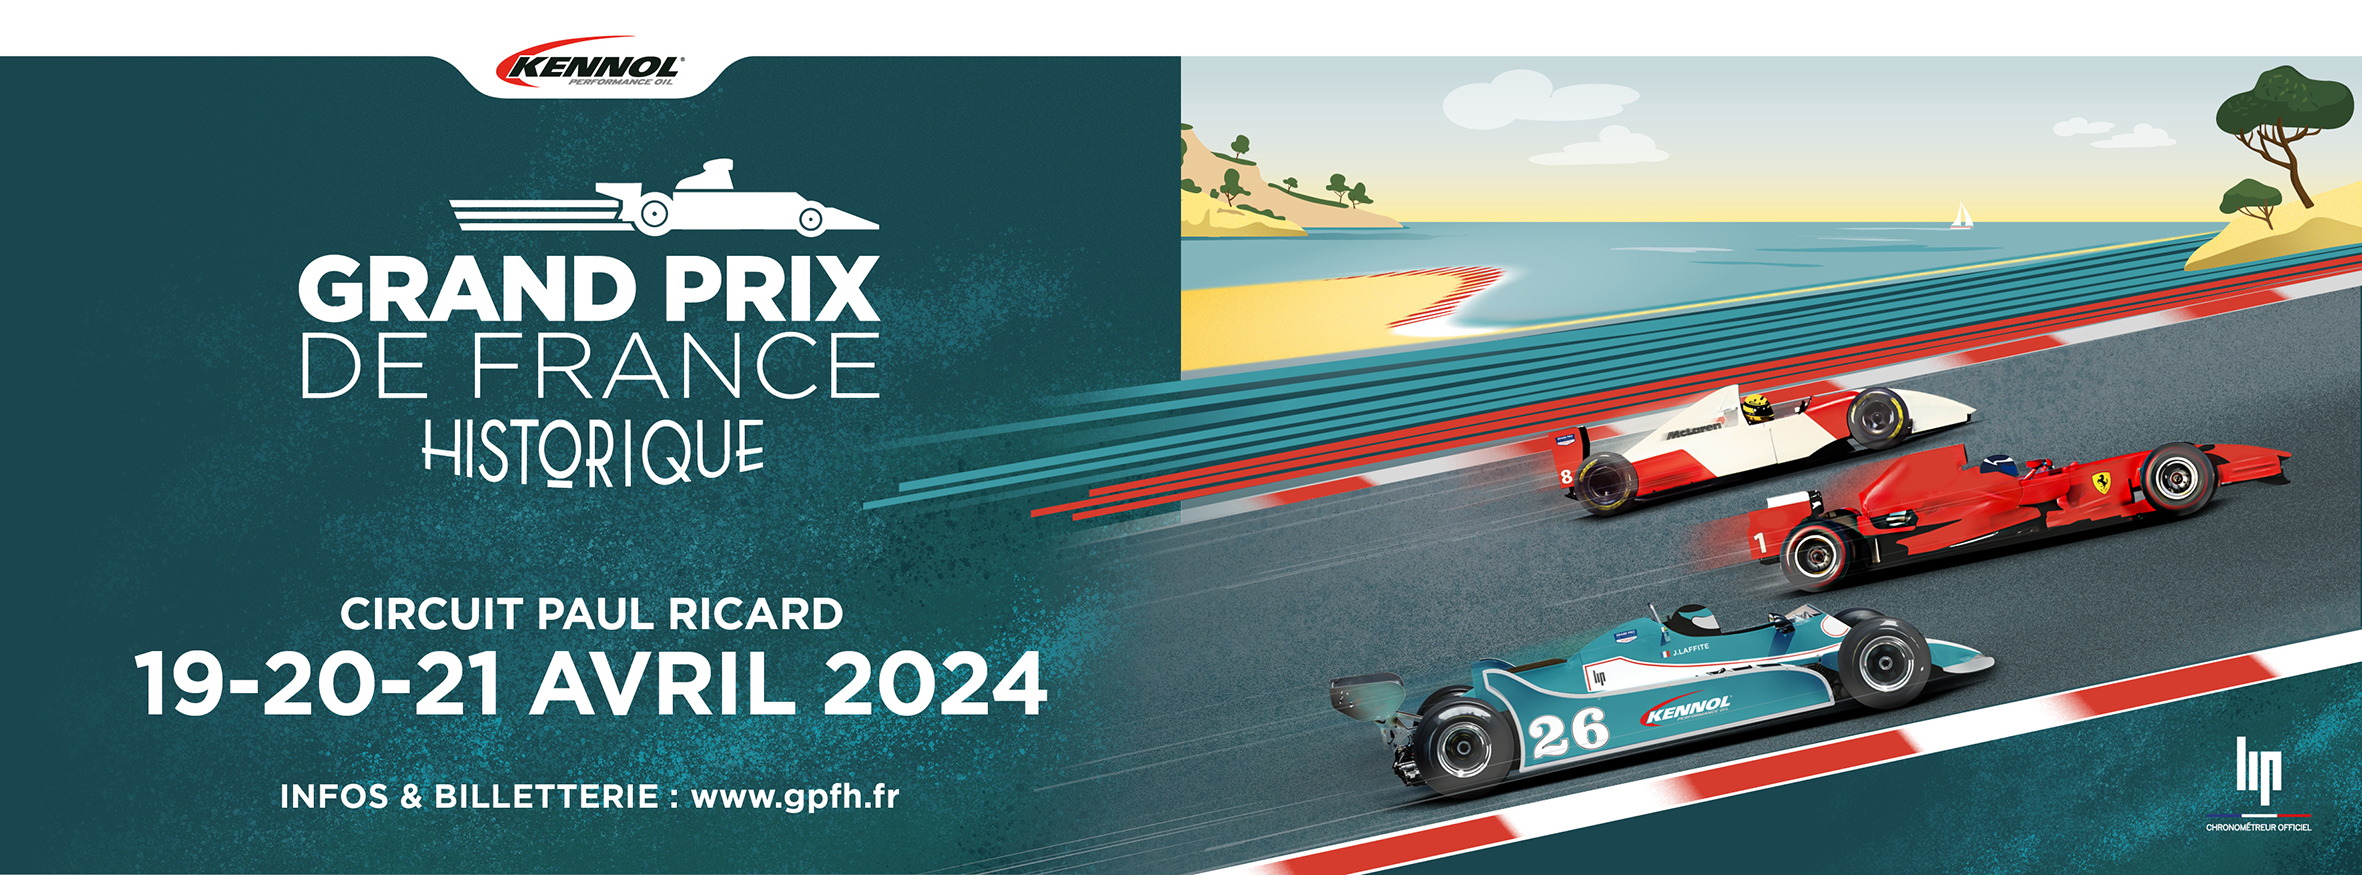 Communiqué de Presse 2| Kennol Grand Prix de France Historique 2024